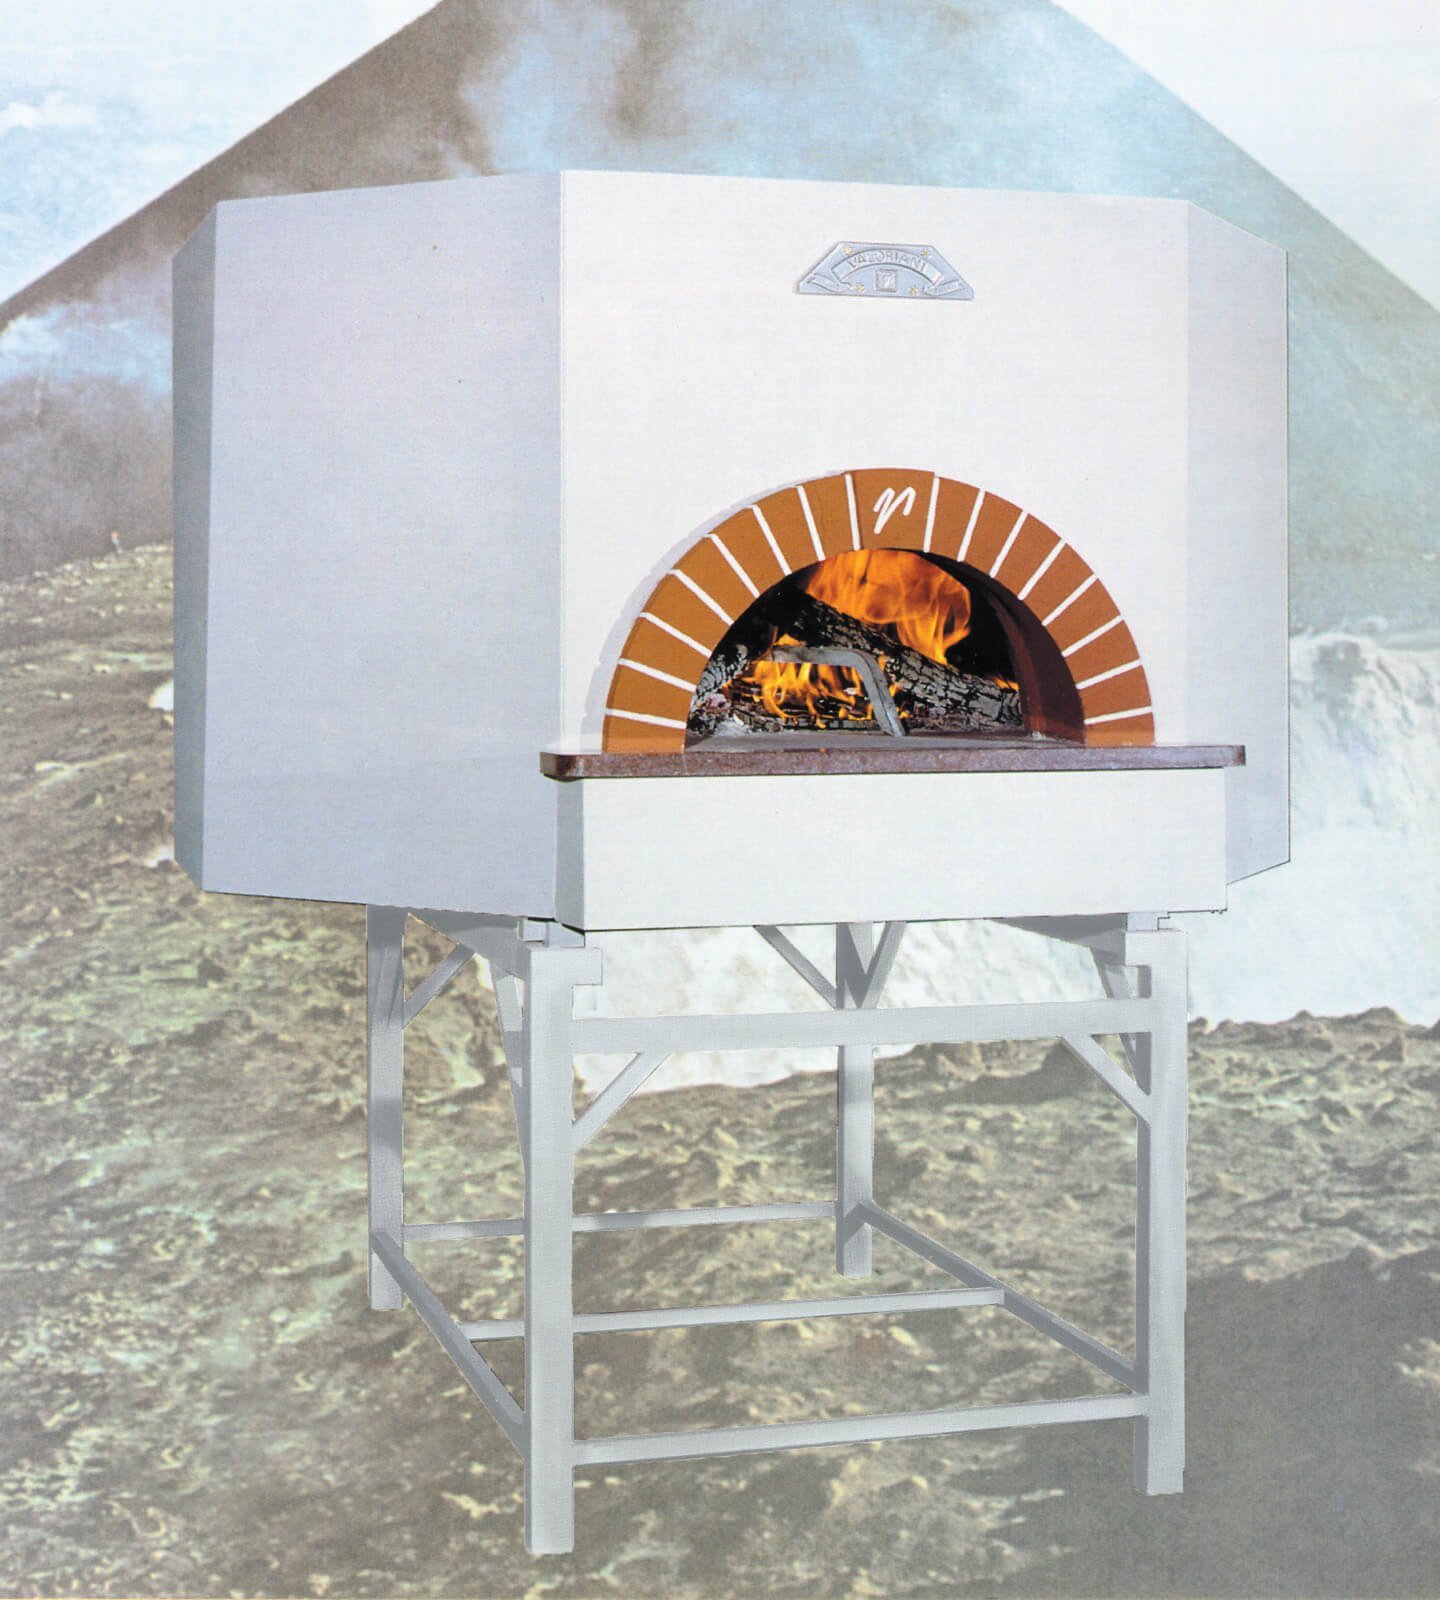 Pizzaofen Gastro: Valoriani Vesuvius OT, Holz und Gas, 160cm Durchmesser